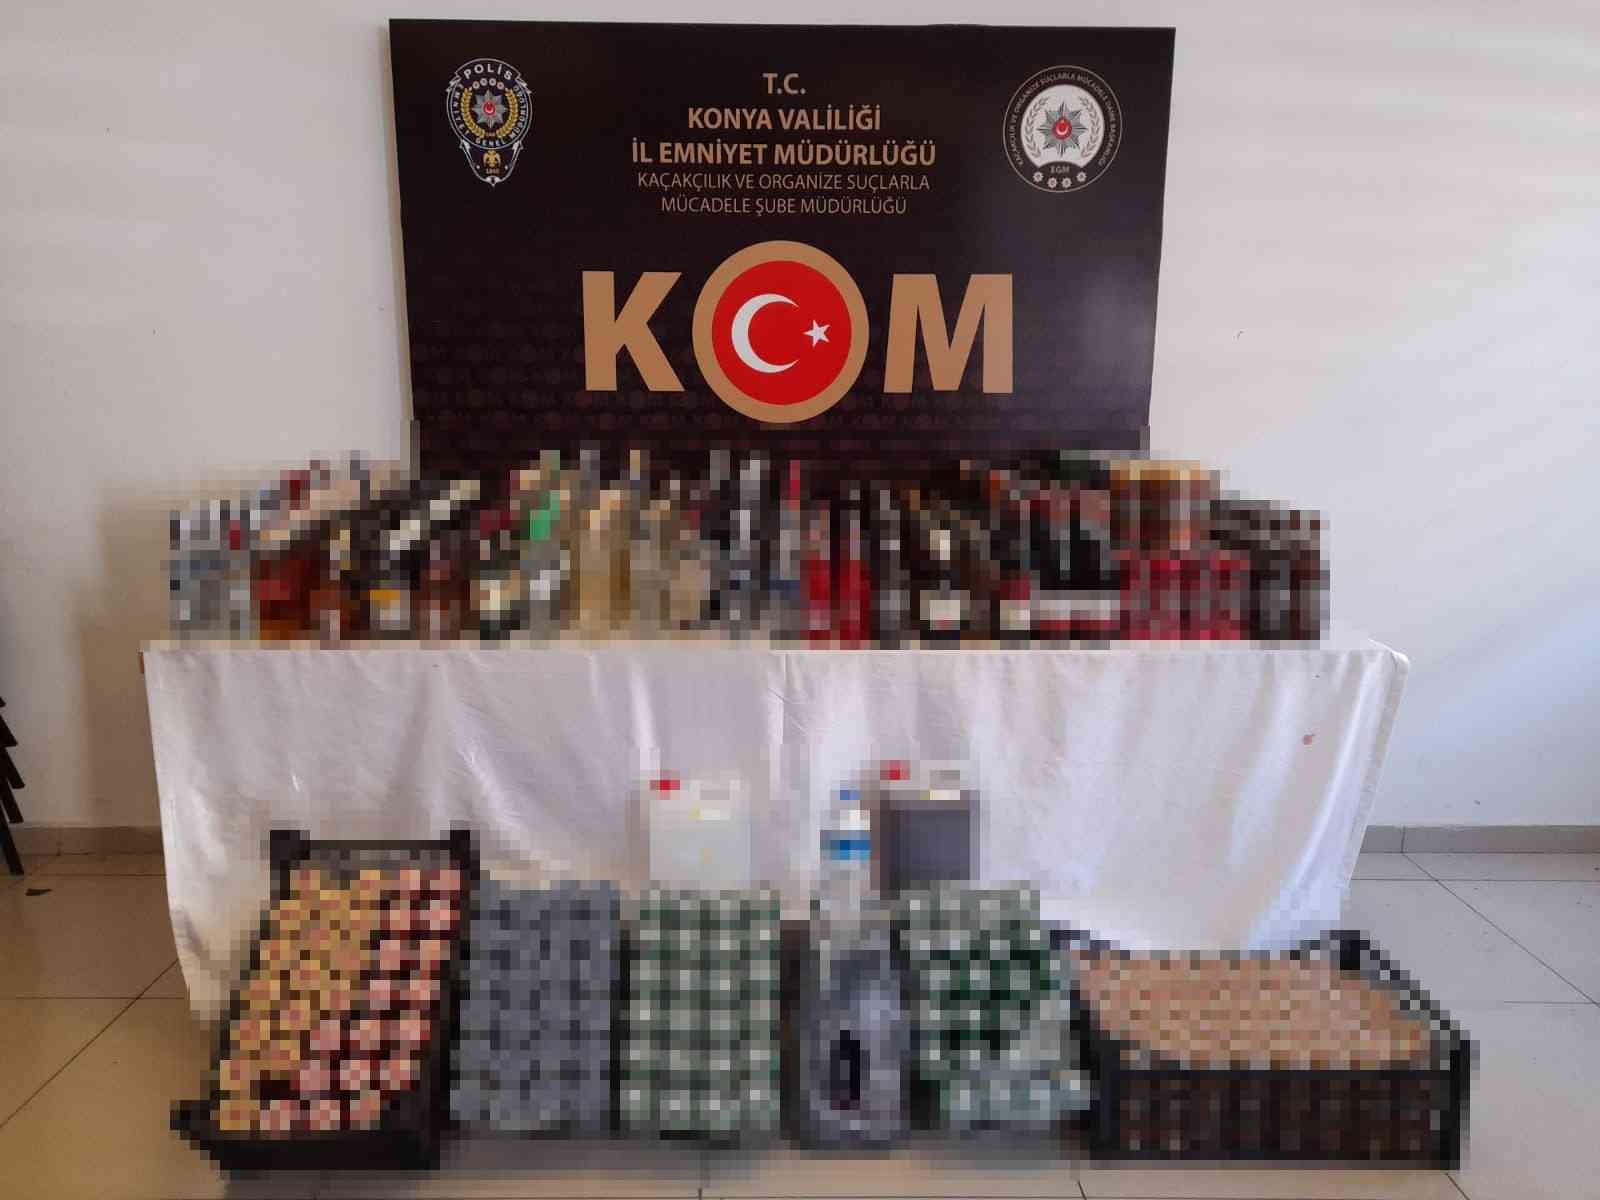 Konya’da yeni yıl öncesi kaçak içki operasyonu: 9 gözaltı #konya